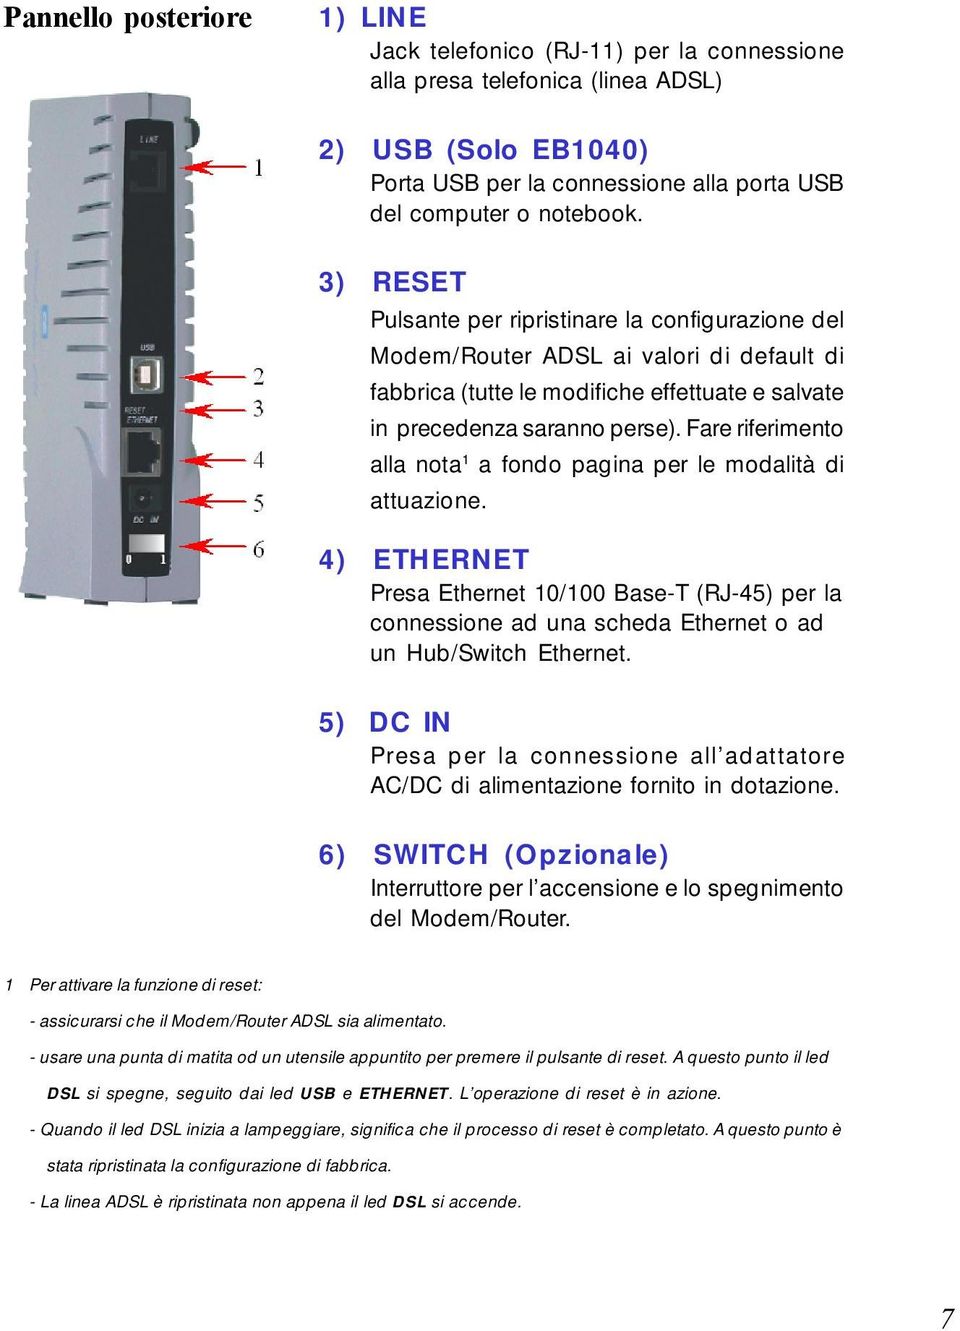 Fare riferimento alla nota 1 a fondo pagina per le modalità di attuazione. 4) ETHERNET Presa Ethernet 10/100 Base-T (RJ-45) per la connessione ad una scheda Ethernet o ad un Hub/Switch Ethernet.